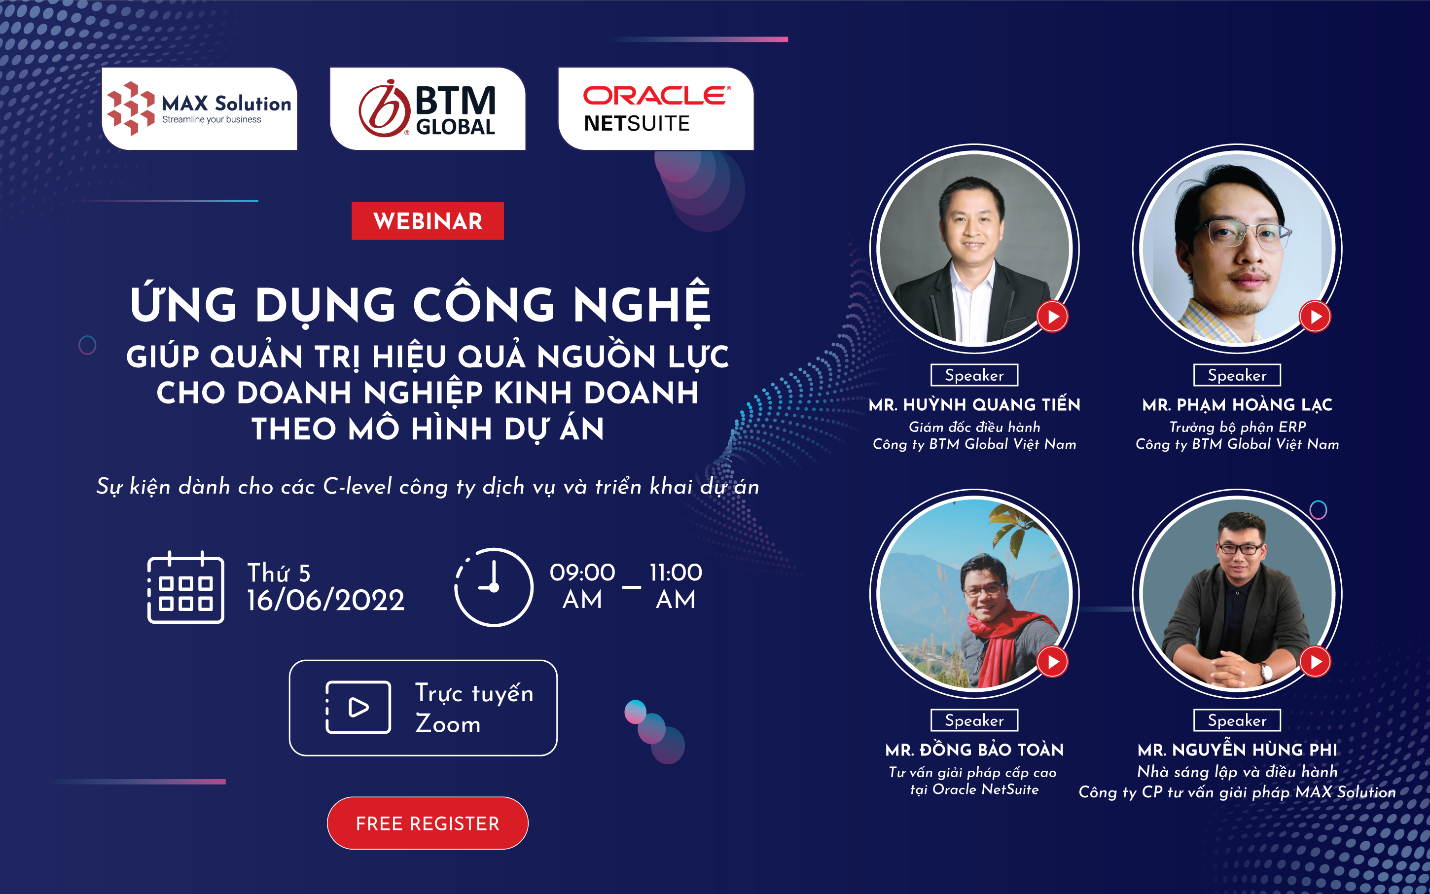 BTM Global Việt Nam tổ chức sự kiện trực tuyến “Ứng dụng công nghệ giúp quản trị hiệu quả nguồn lực cho doanh nghiệp kinh doanh theo mô hình dự án”